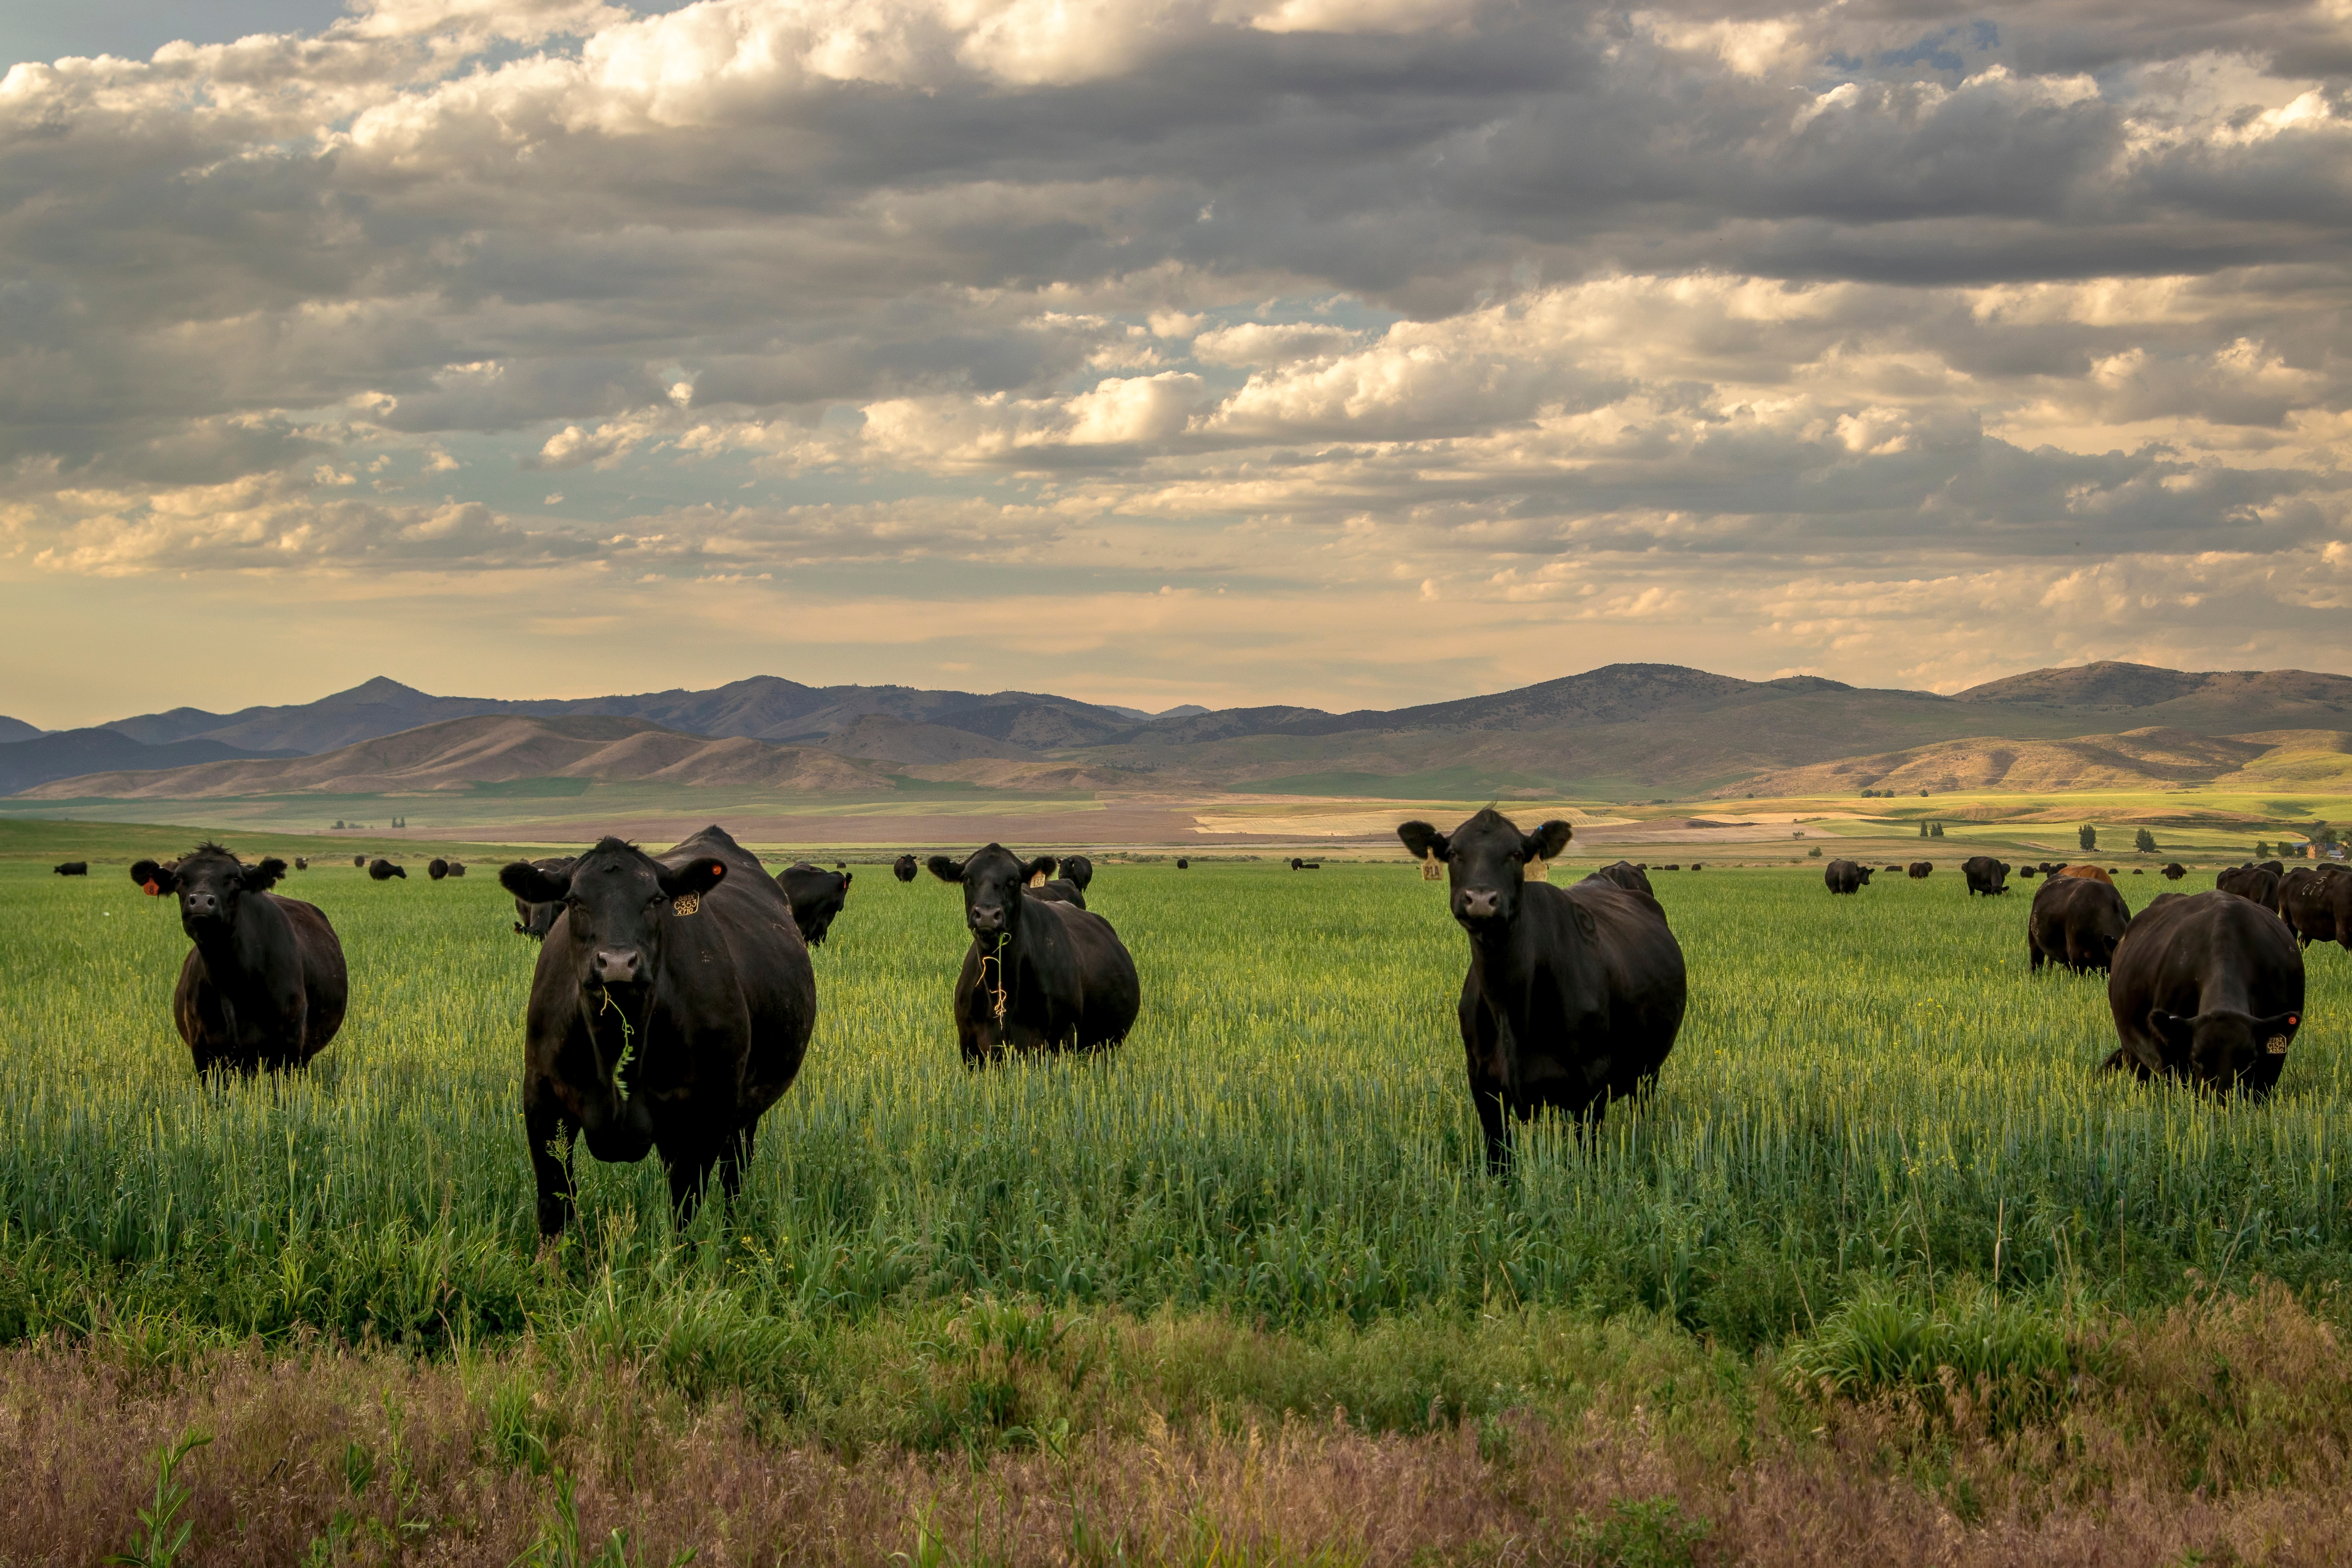 Agrossilvopastoril: a evolução do confinamento de gado